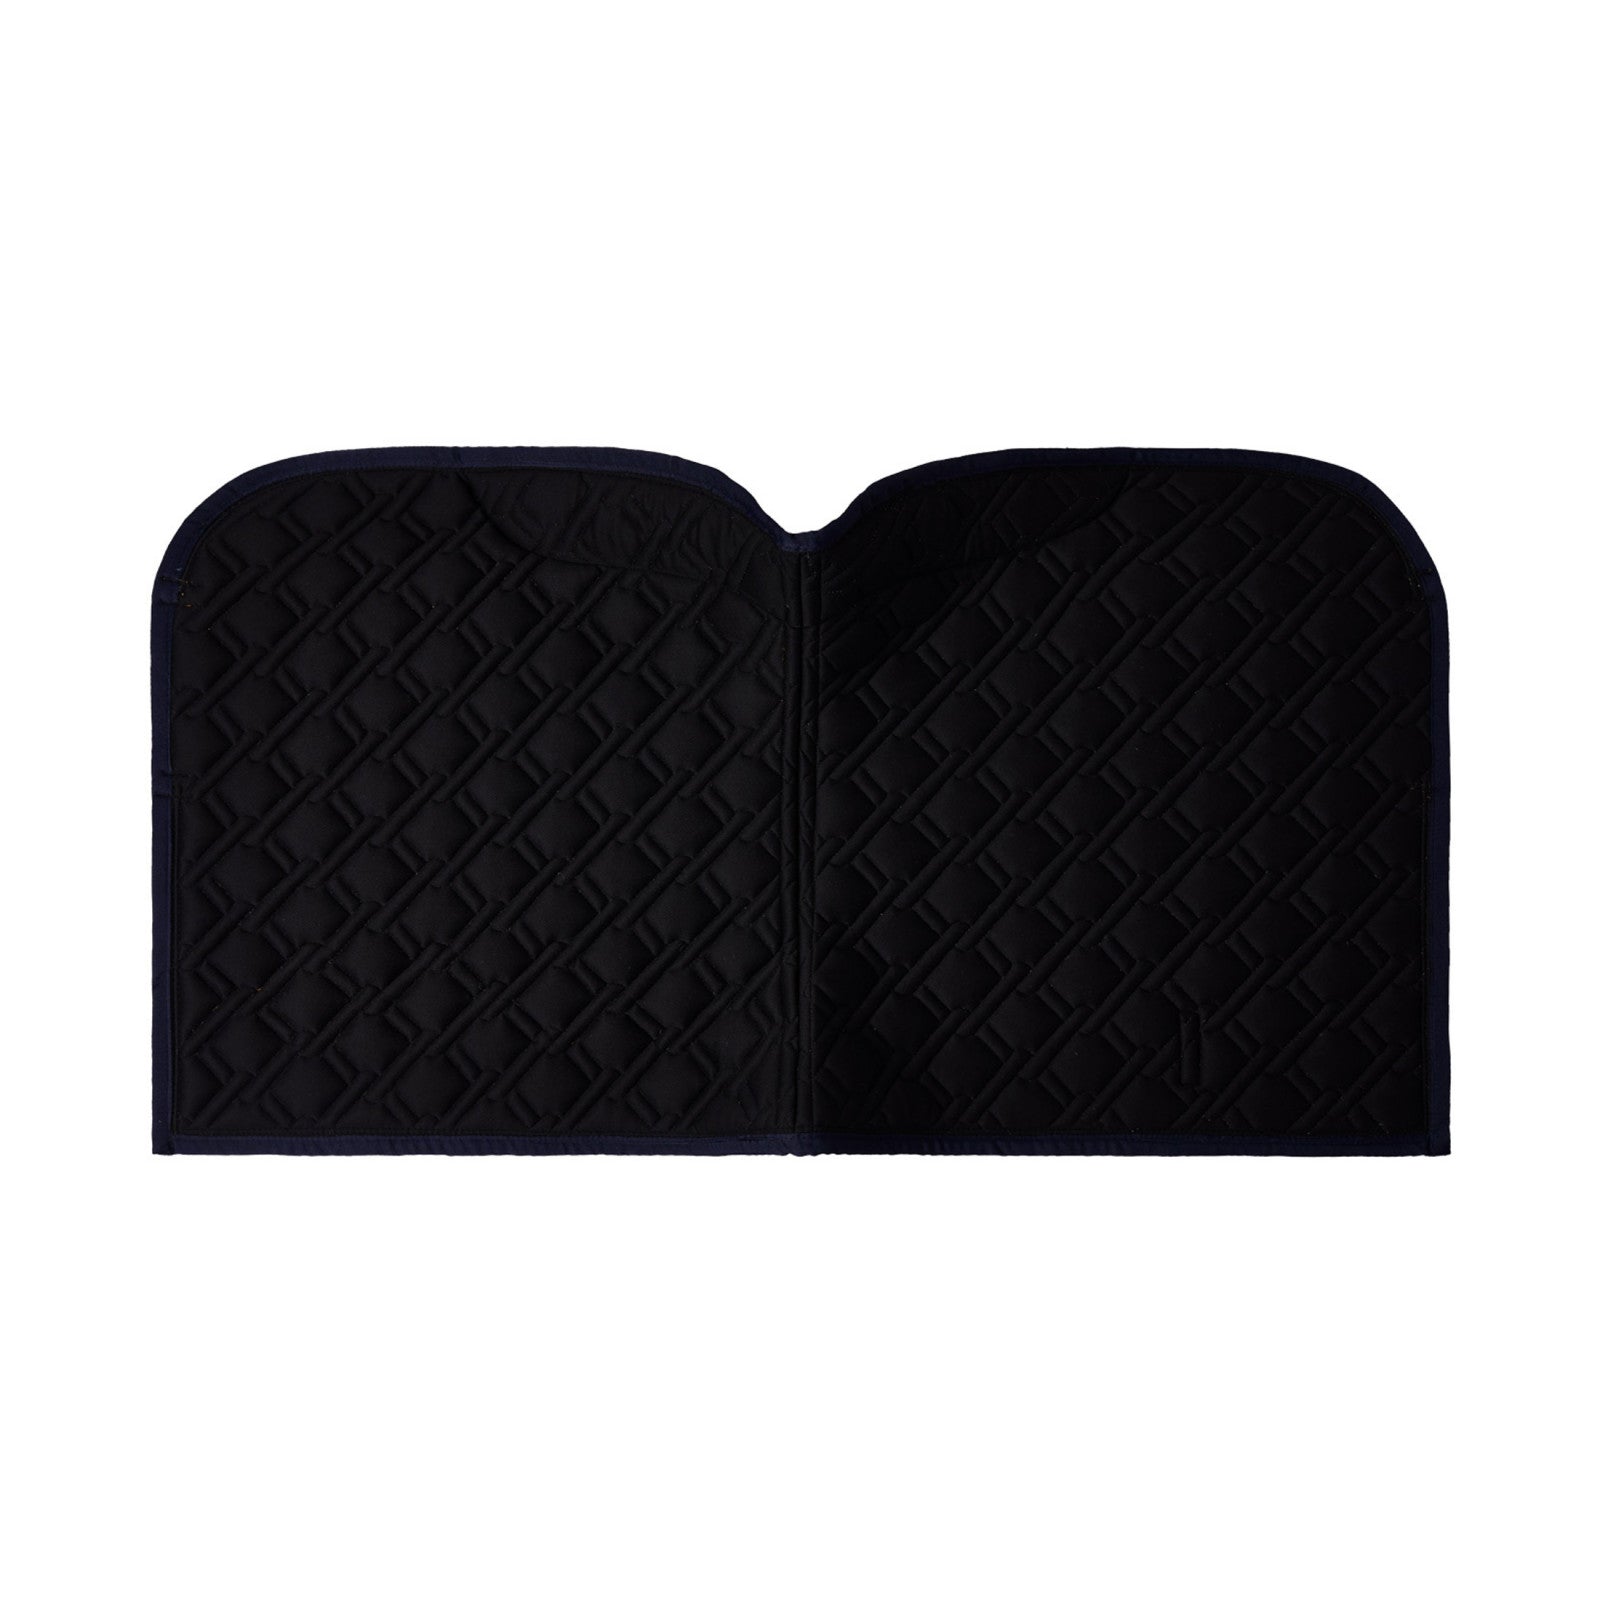 Buy B Vertigo Evolve Dressage Saddle Pad with Anti-Slip Cushion